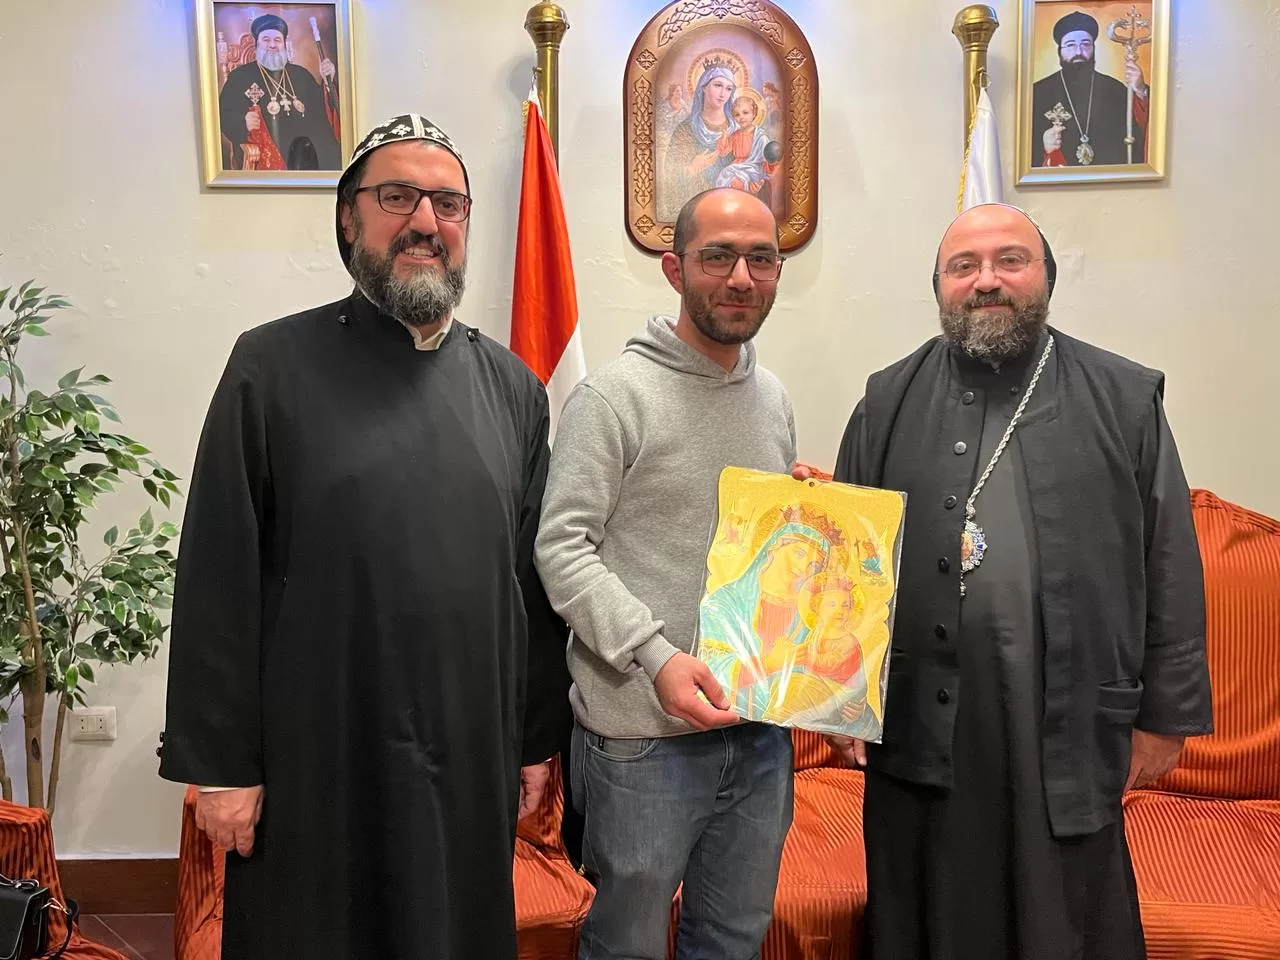 النائب البطريركي للكنيسة السريانية الأرثوذكسية في مصر بالوكالة يجتمع مع أمناء خدمات كنيسة العذراء